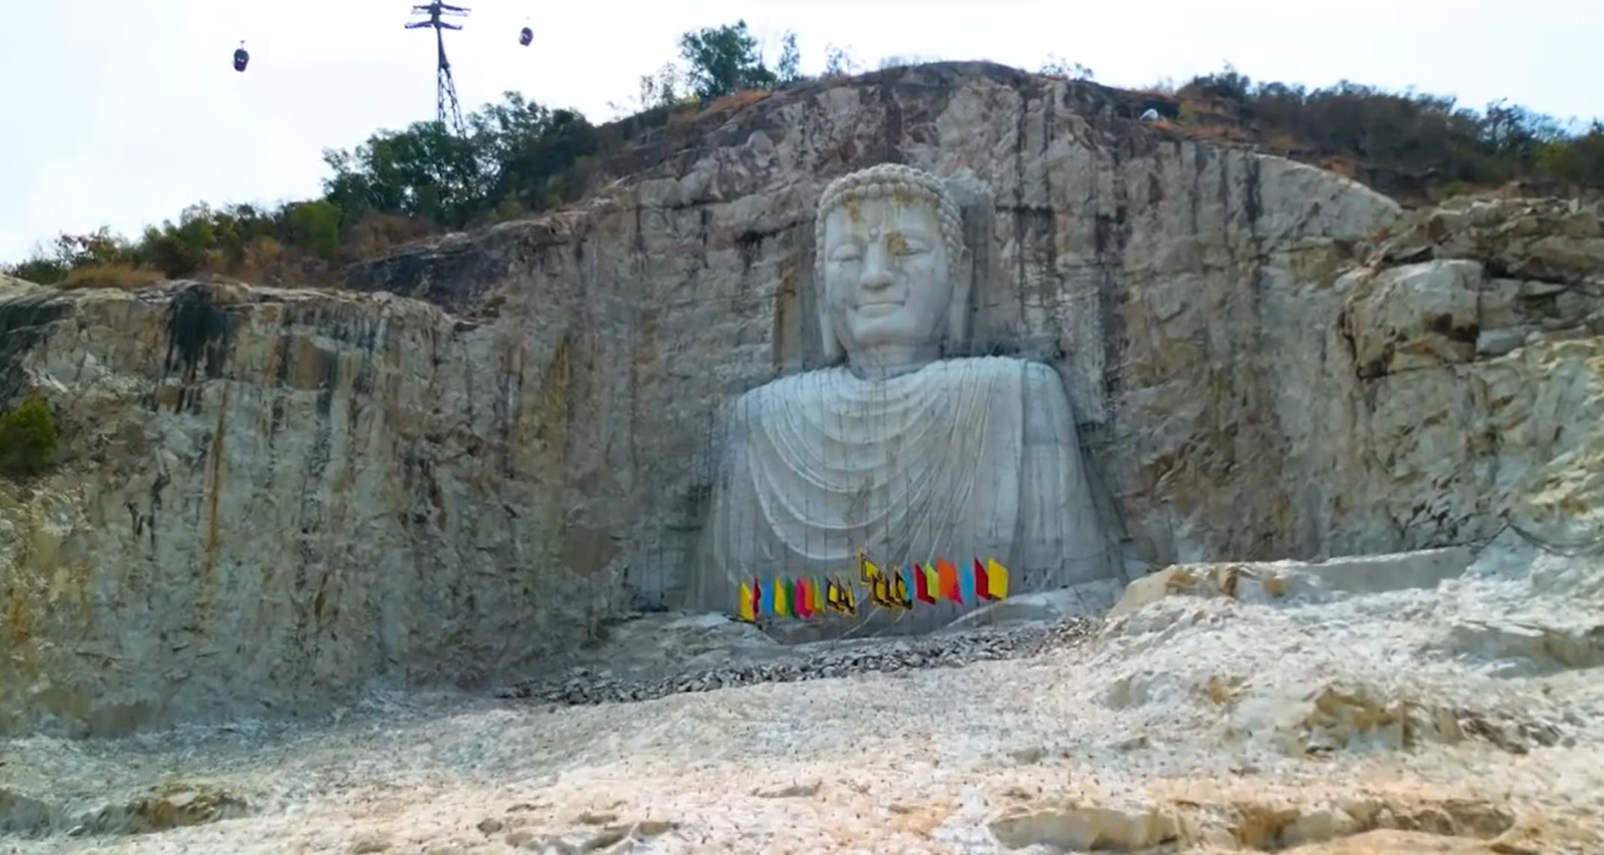 Kinh ngạc tượng Phật khổng lồ trên vách núi ở An Giang - 1